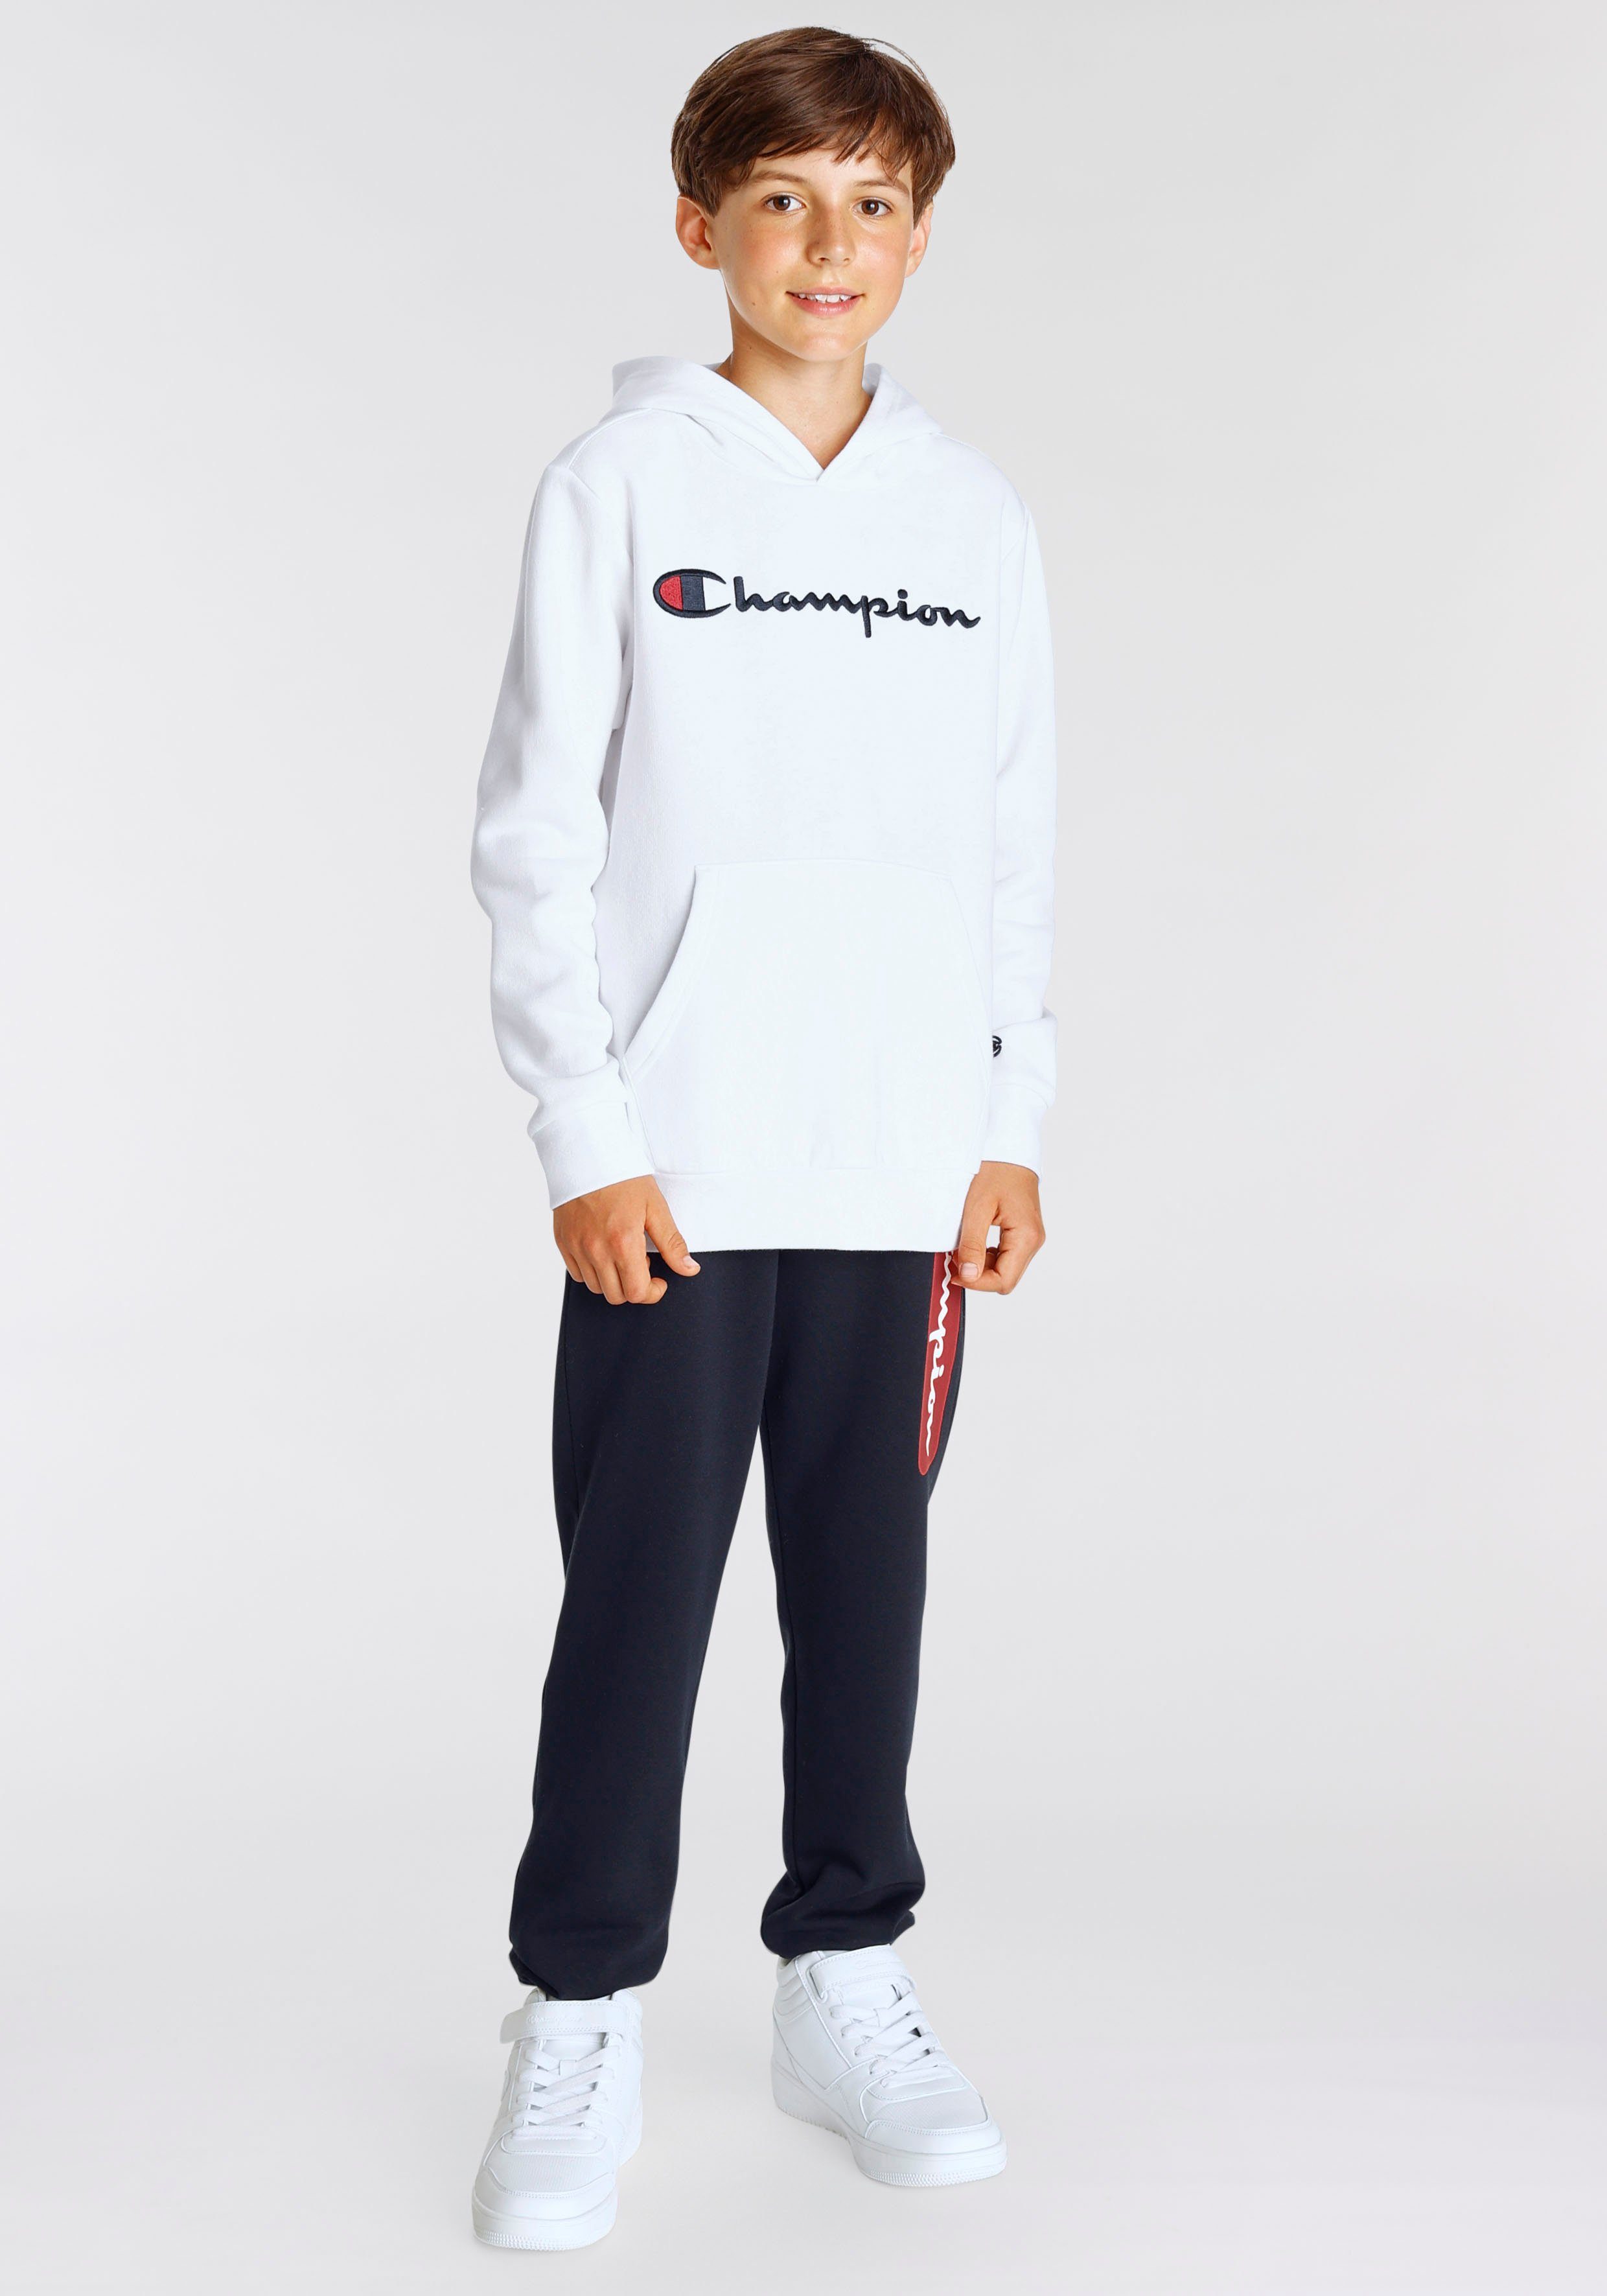 Champion Sweatshirt Classic - Sweatshirt Hooded weiß large Logo Kinder für